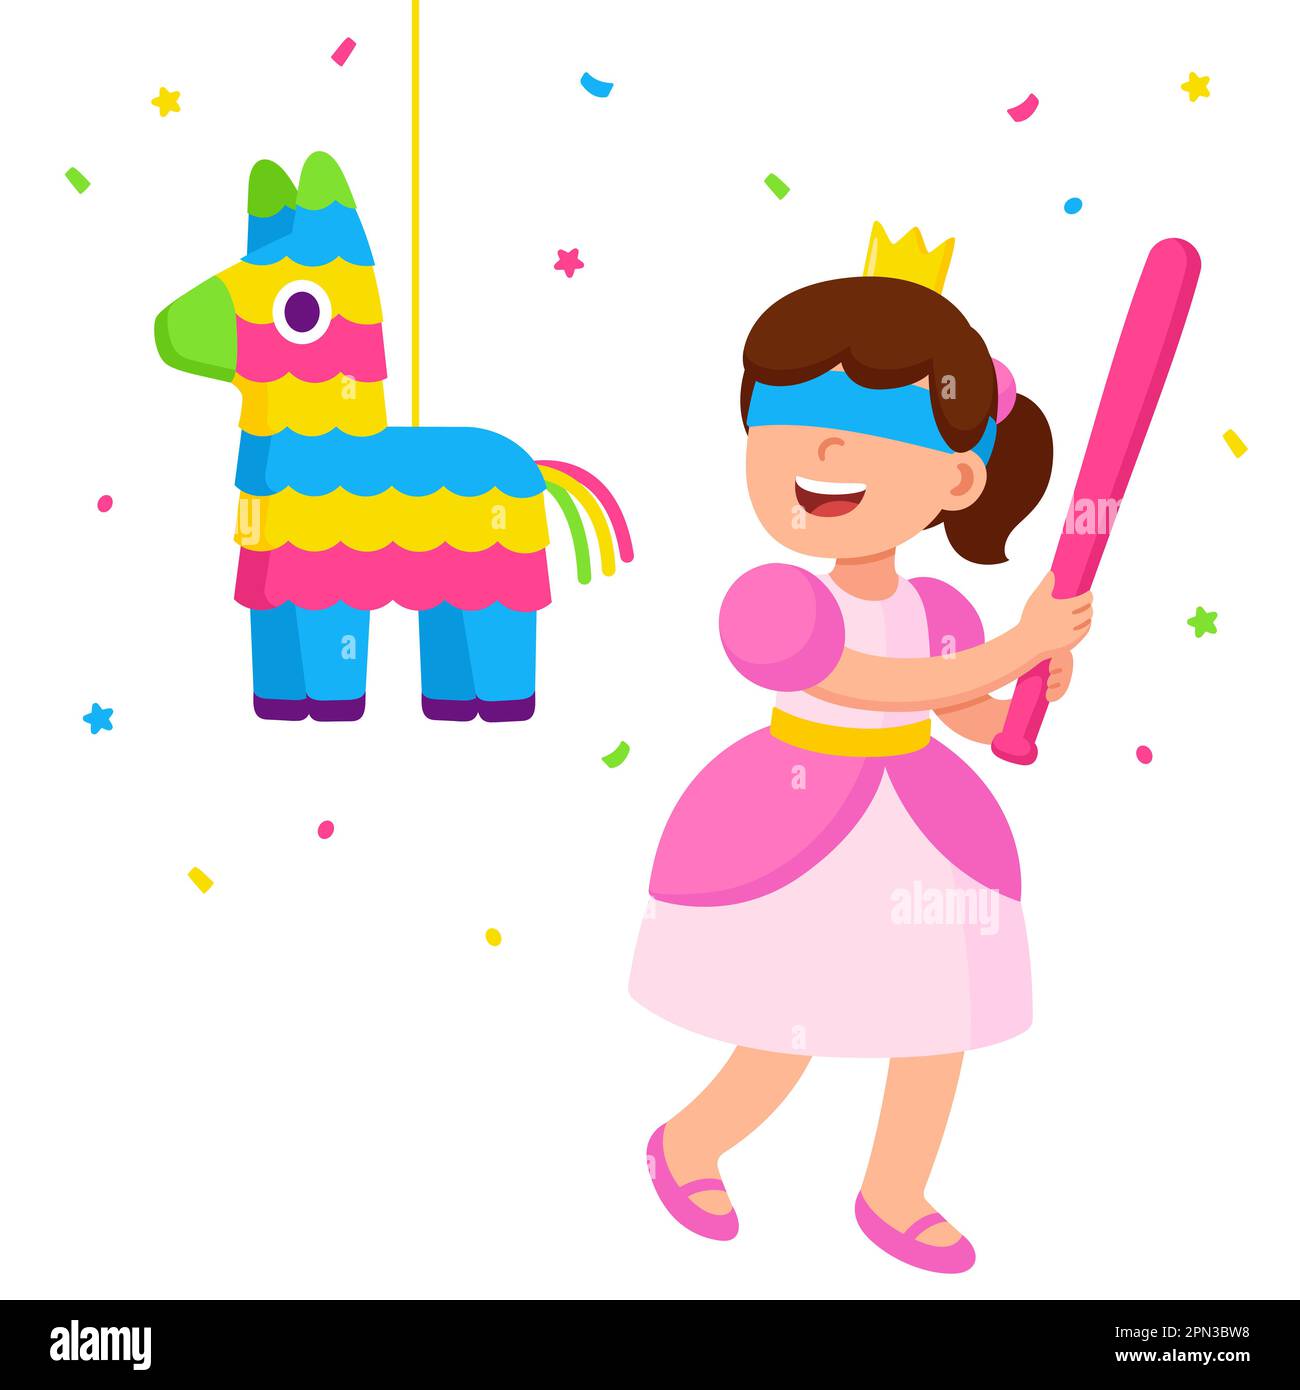 Bambina in abito principessa colpendo pinata con un pipistrello. Festa di compleanno per bambini, simpatica illustrazione vettoriale dei cartoni animati. Illustrazione Vettoriale